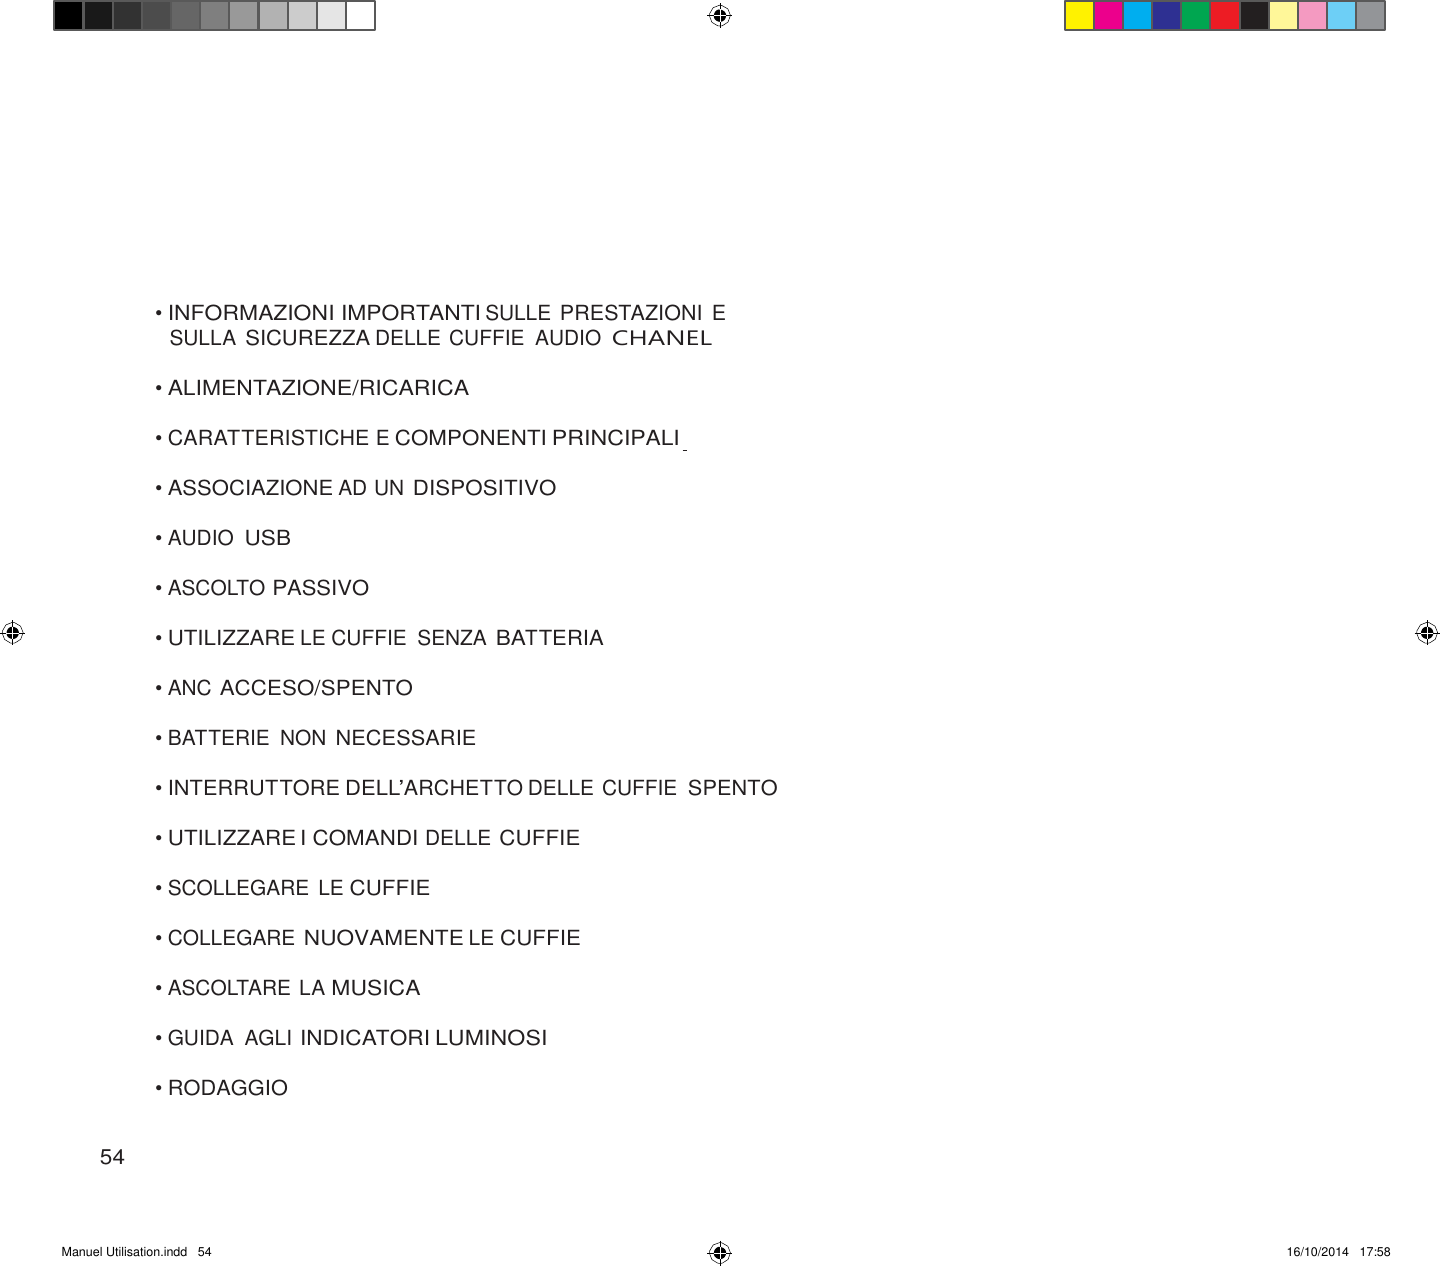 Manuel Utilisation.indd   54 16/10/2014   17:58               • INFORMAZIONI IMPORTANTI SULLE PRESTAZIONI E SULLA SICUREZZA DELLE CUFFIE  AUDIO CHANEL  • ALIMENTAZIONE/RICARICA  • CARATTERISTICHE E COMPONENTI PRINCIPALI  • ASSOCIAZIONE AD UN DISPOSITIVO  • AUDIO USB  • ASCOLTO PASSIVO  • UTILIZZARE LE CUFFIE  SENZA BATTERIA  • ANC ACCESO/SPENTO  • BATTERIE  NON NECESSARIE  • INTERRUTTORE DELL’ARCHETTO DELLE CUFFIE SPENTO  • UTILIZZARE I COMANDI DELLE CUFFIE  • SCOLLEGARE LE CUFFIE  • COLLEGARE NUOVAMENTE LE CUFFIE  • ASCOLTARE LA MUSICA  • GUIDA  AGLI INDICATORI LUMINOSI  • RODAGGIO   54 